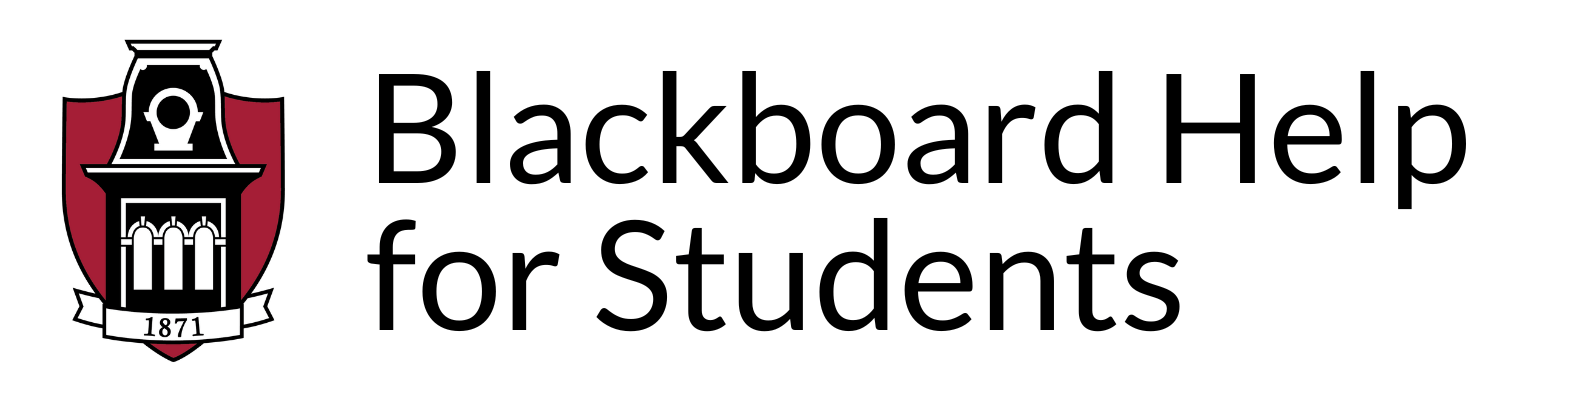 Blackboard Help for Students